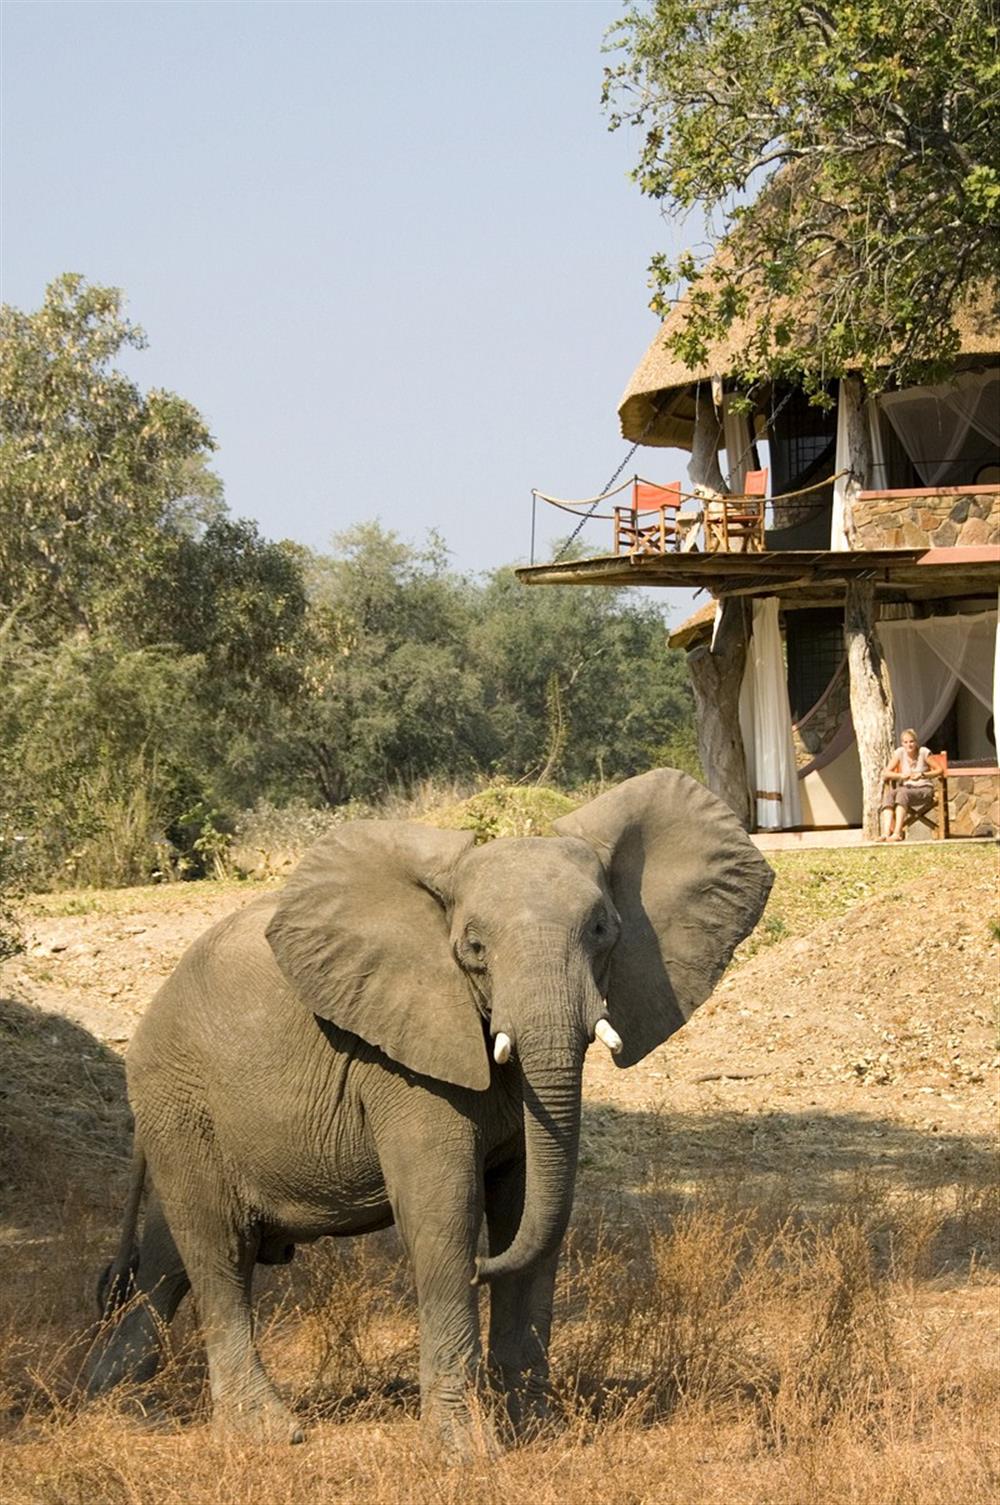 Luangwa Safari House